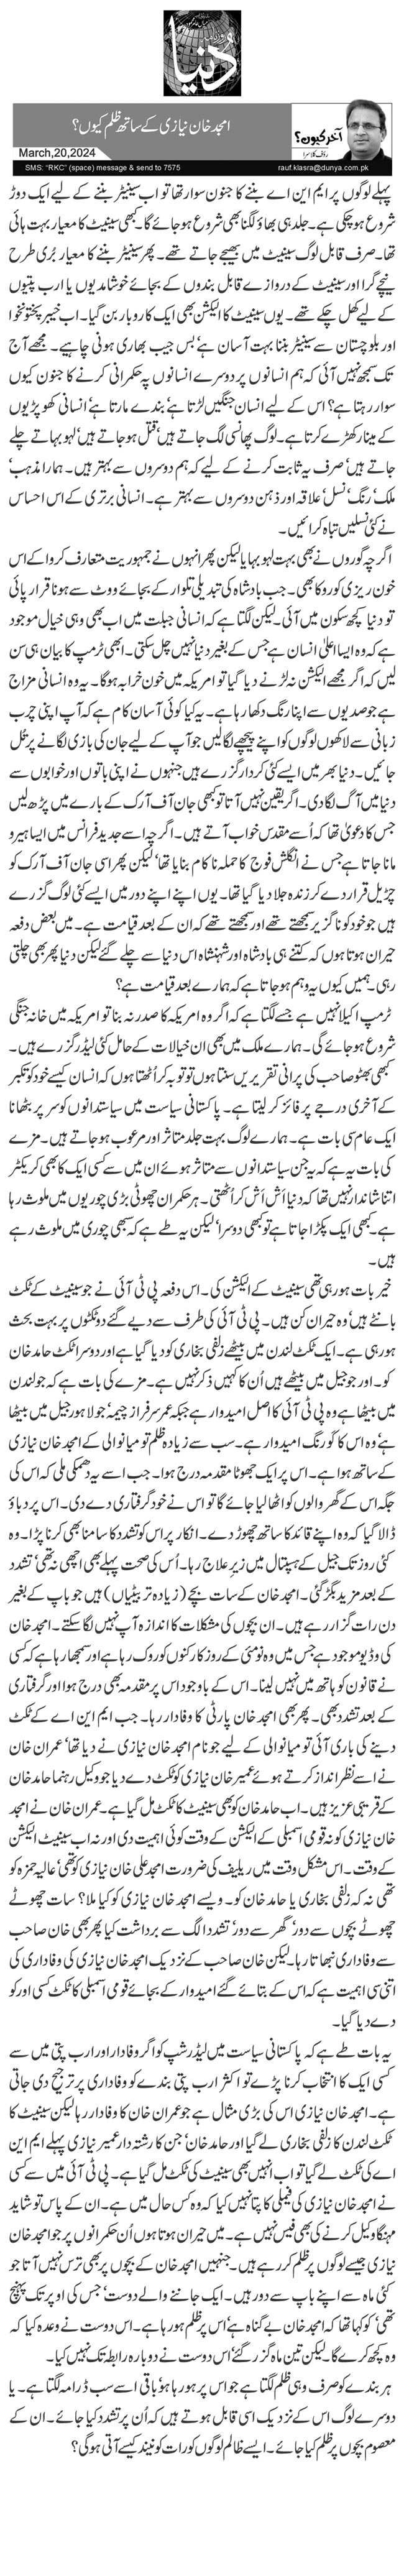 امجد خان نیازی کے ساتھ ظلم کیوں؟